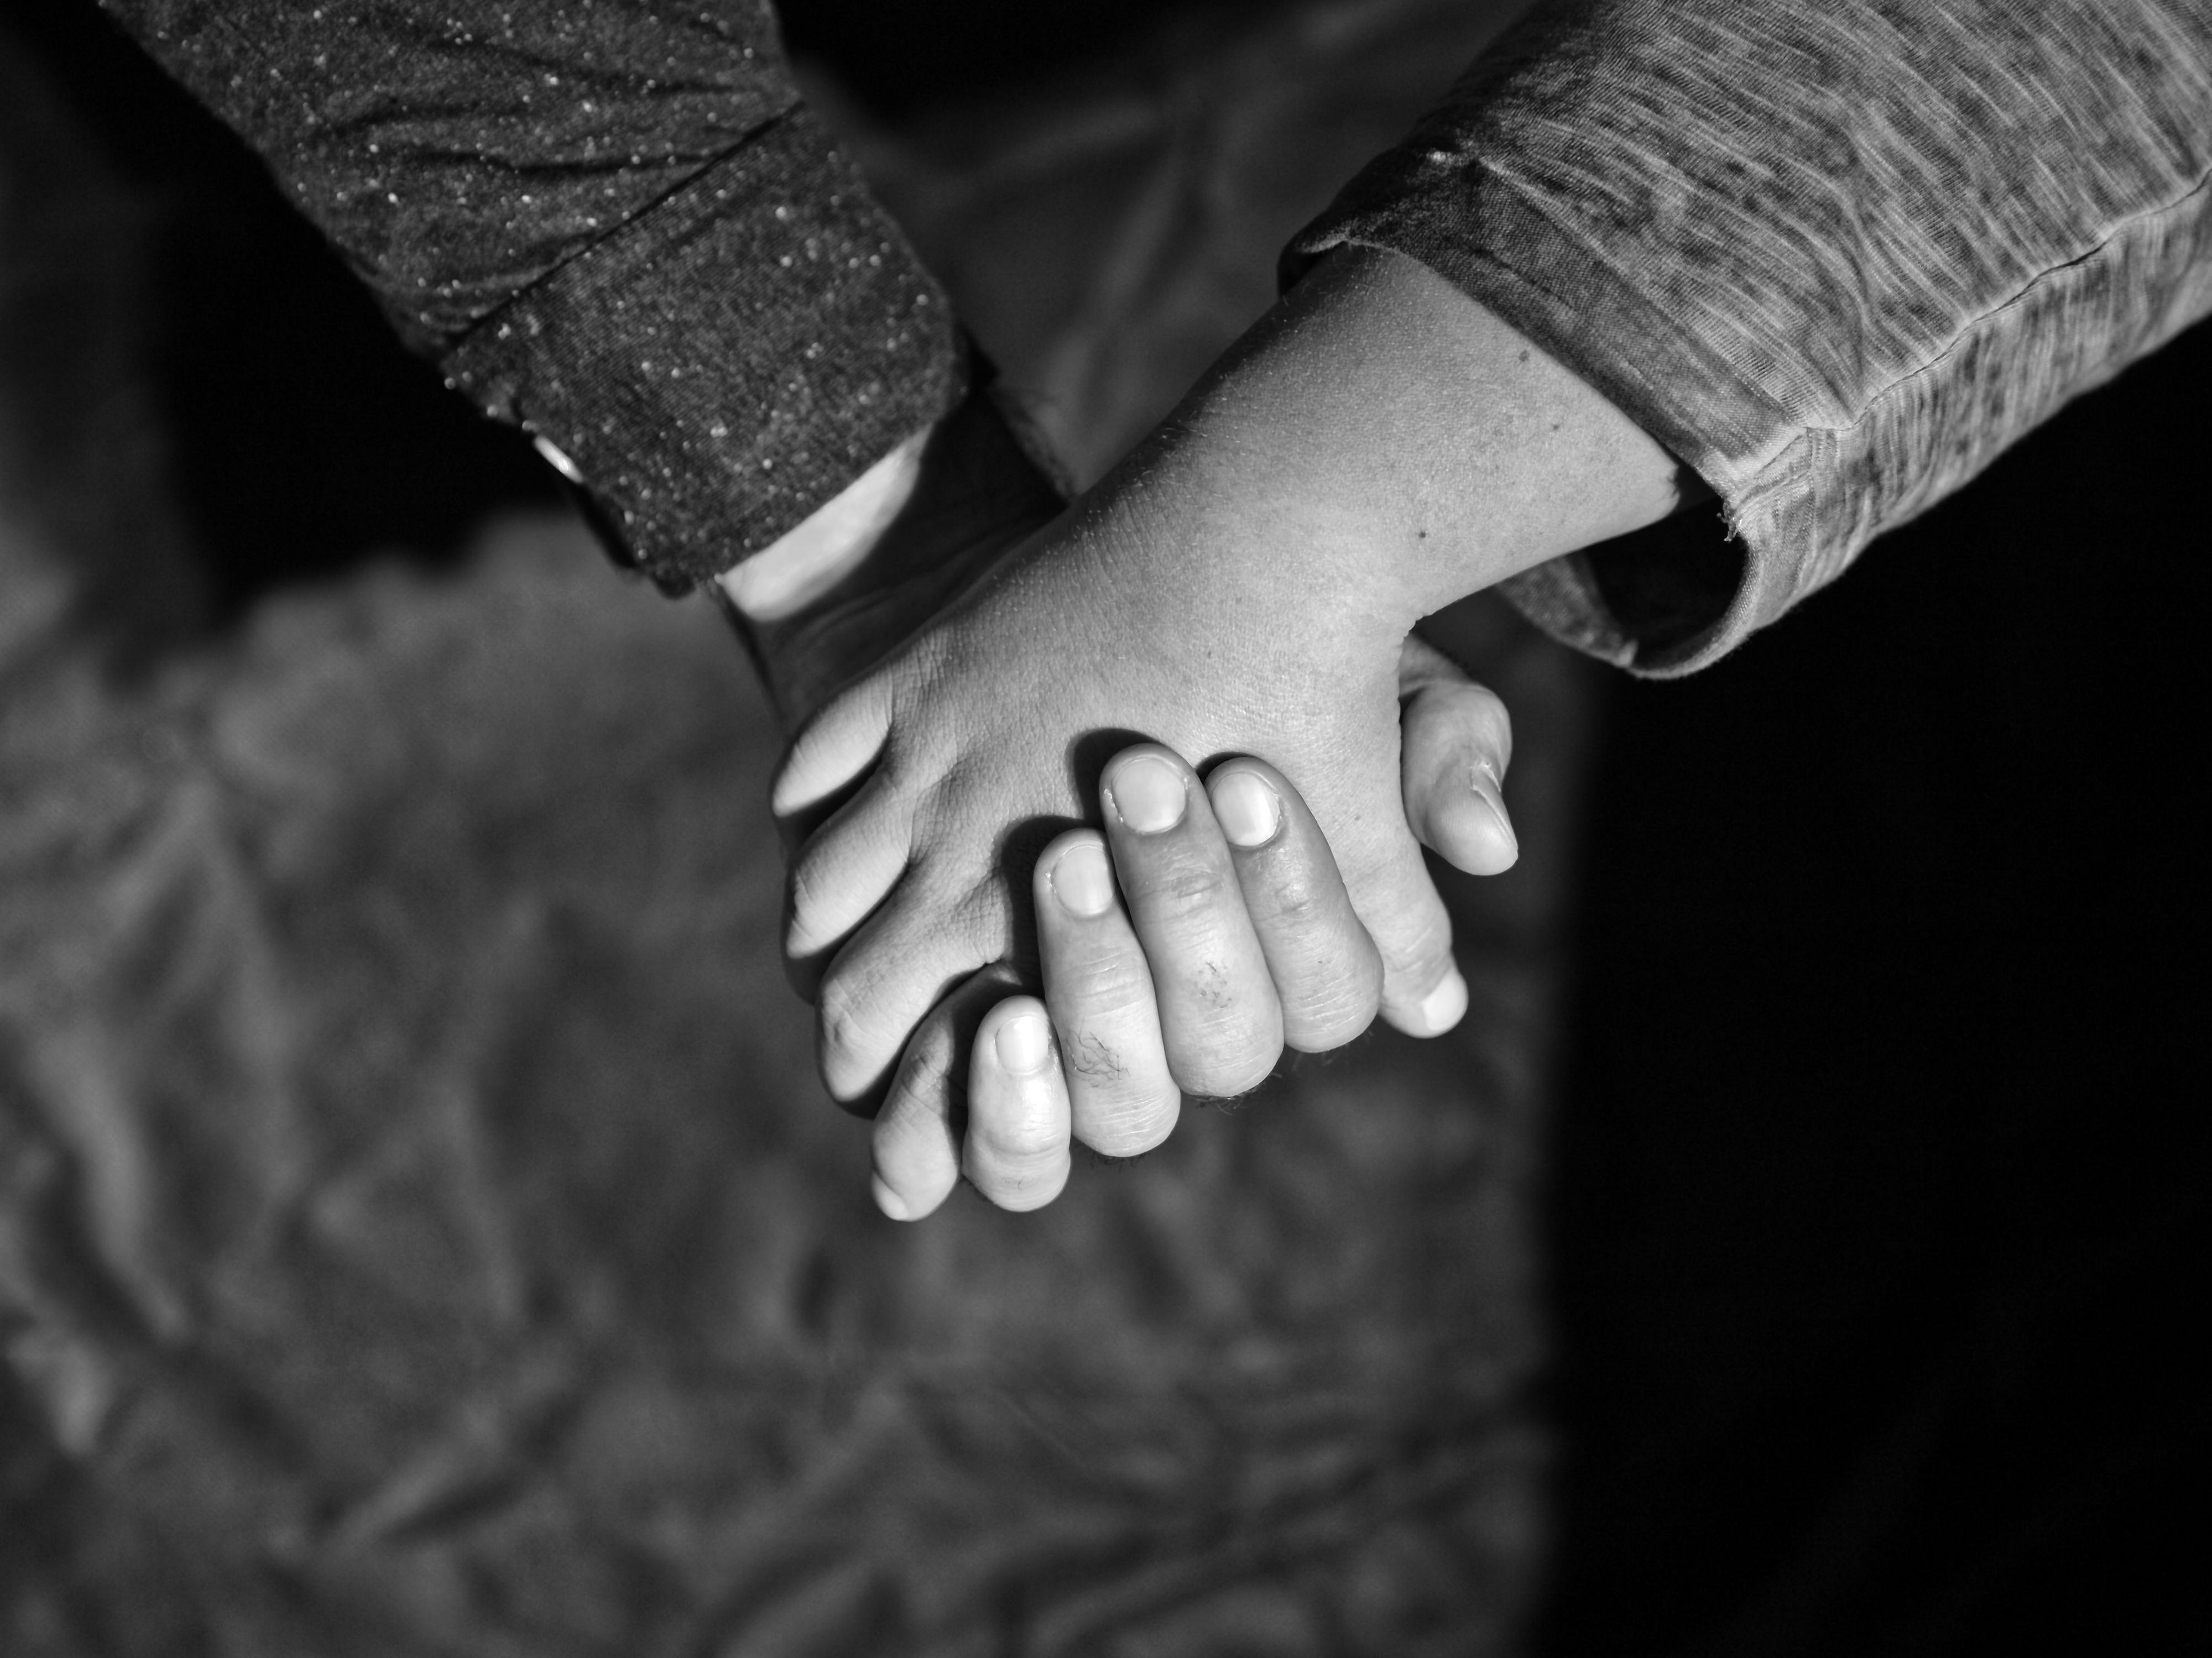 Zwei Hände halten sich gegenseitig.